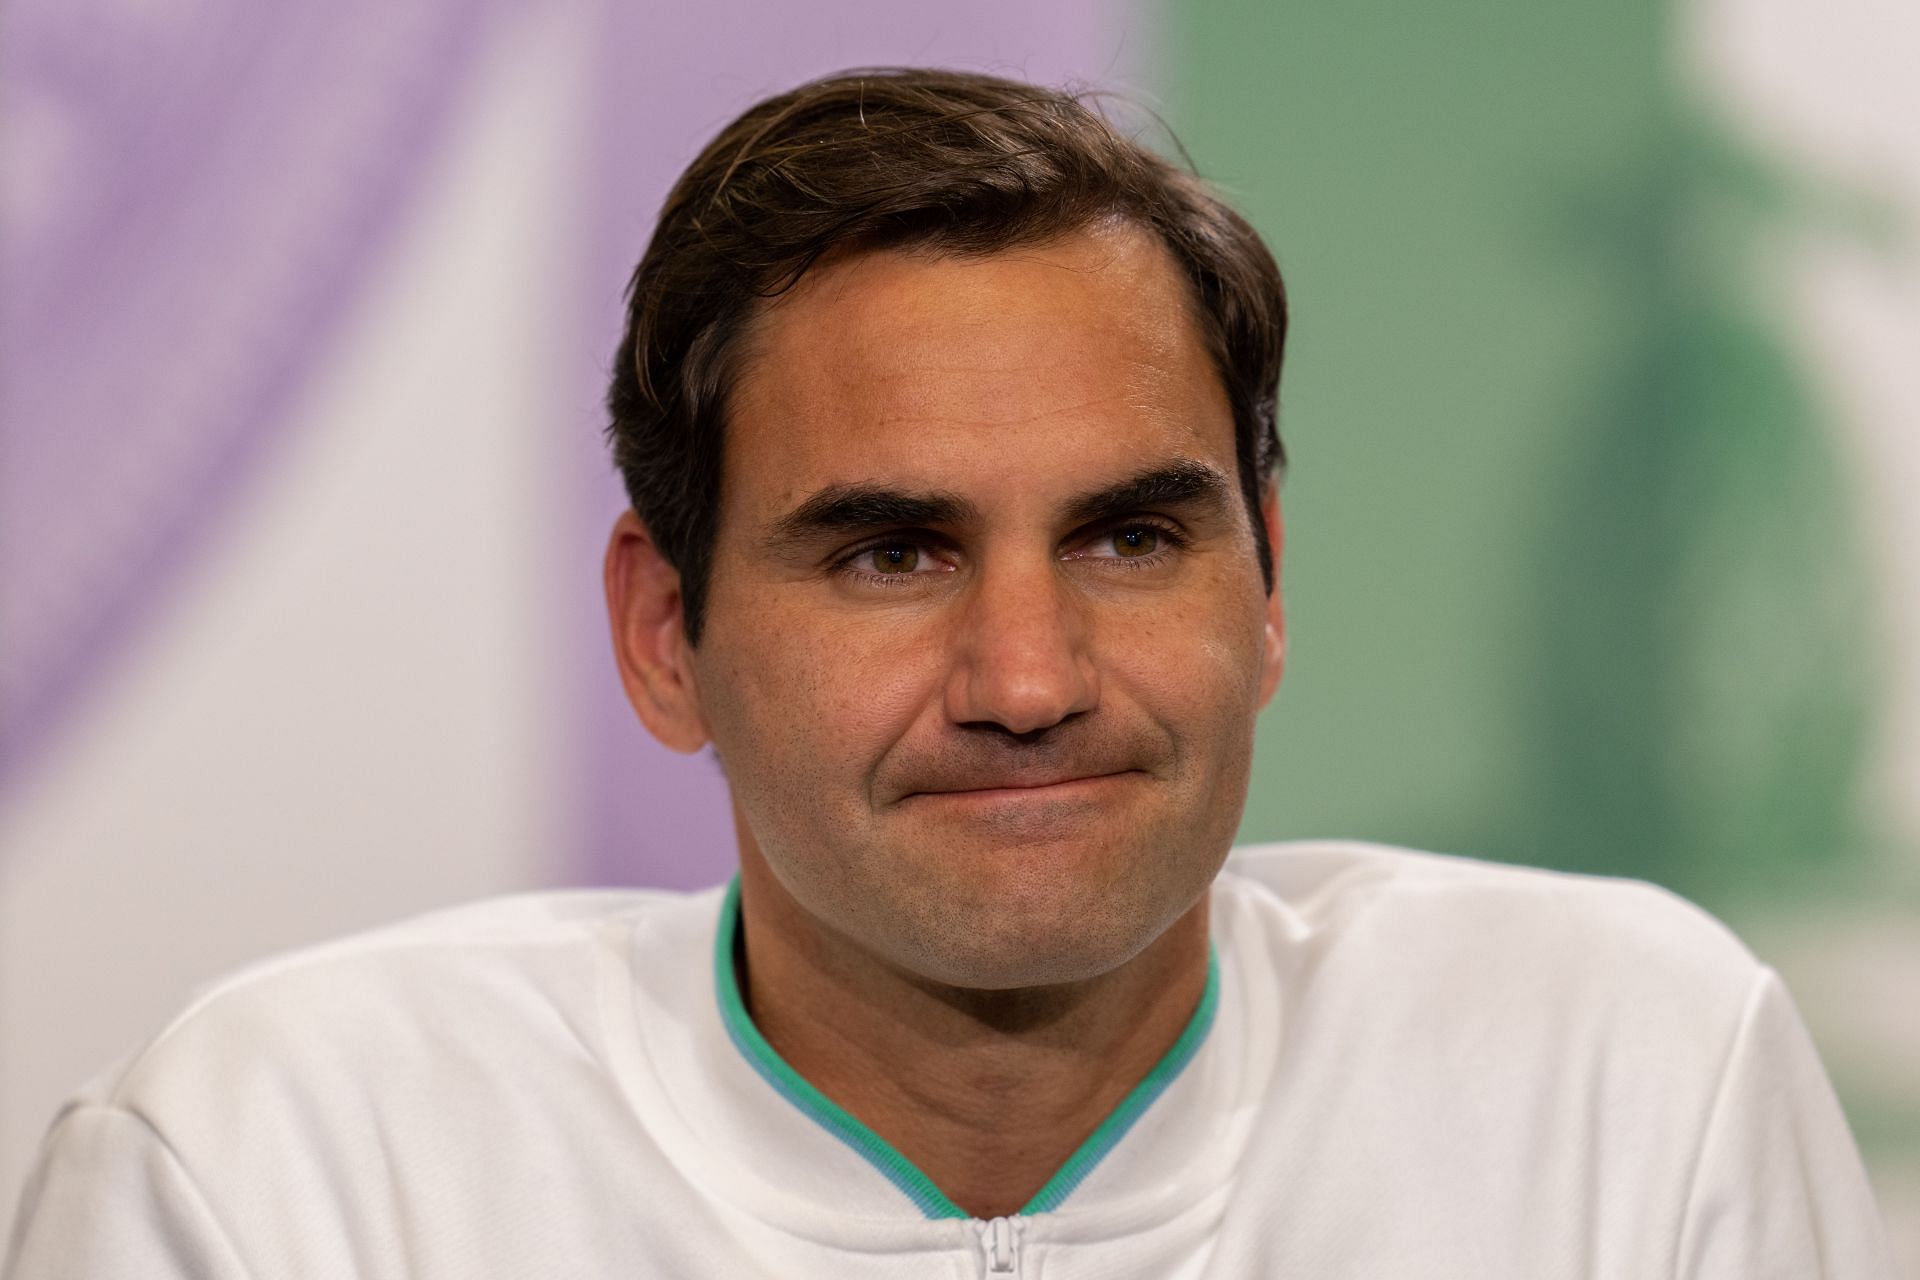 Roger Federer following his loss to Hubert Hurkacz in the Wimbledon 2021 quarterfinals